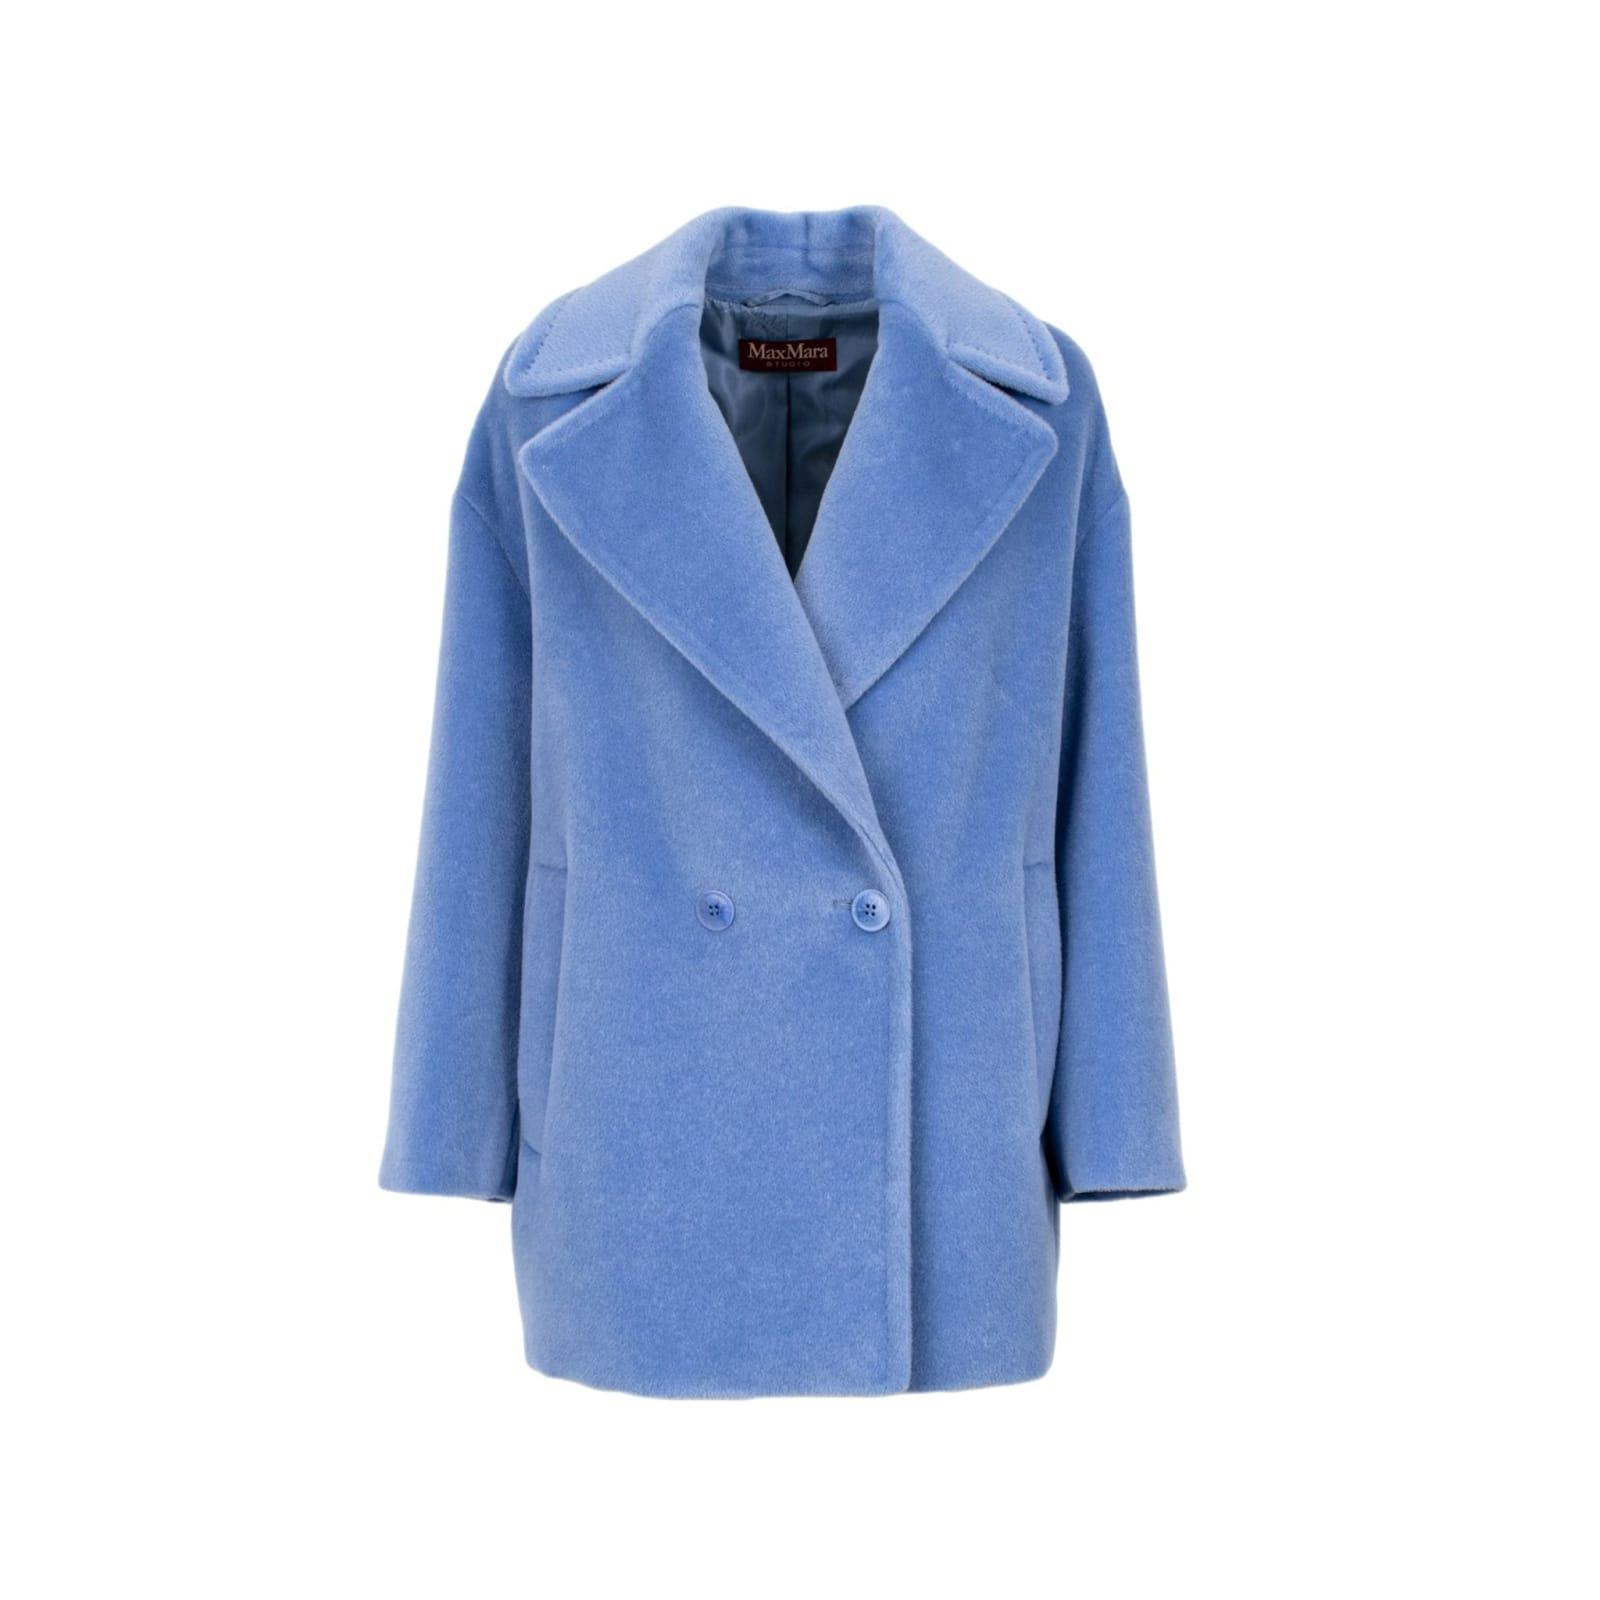 Max Mara Studio Gio Caban Coat in Blue | Lyst